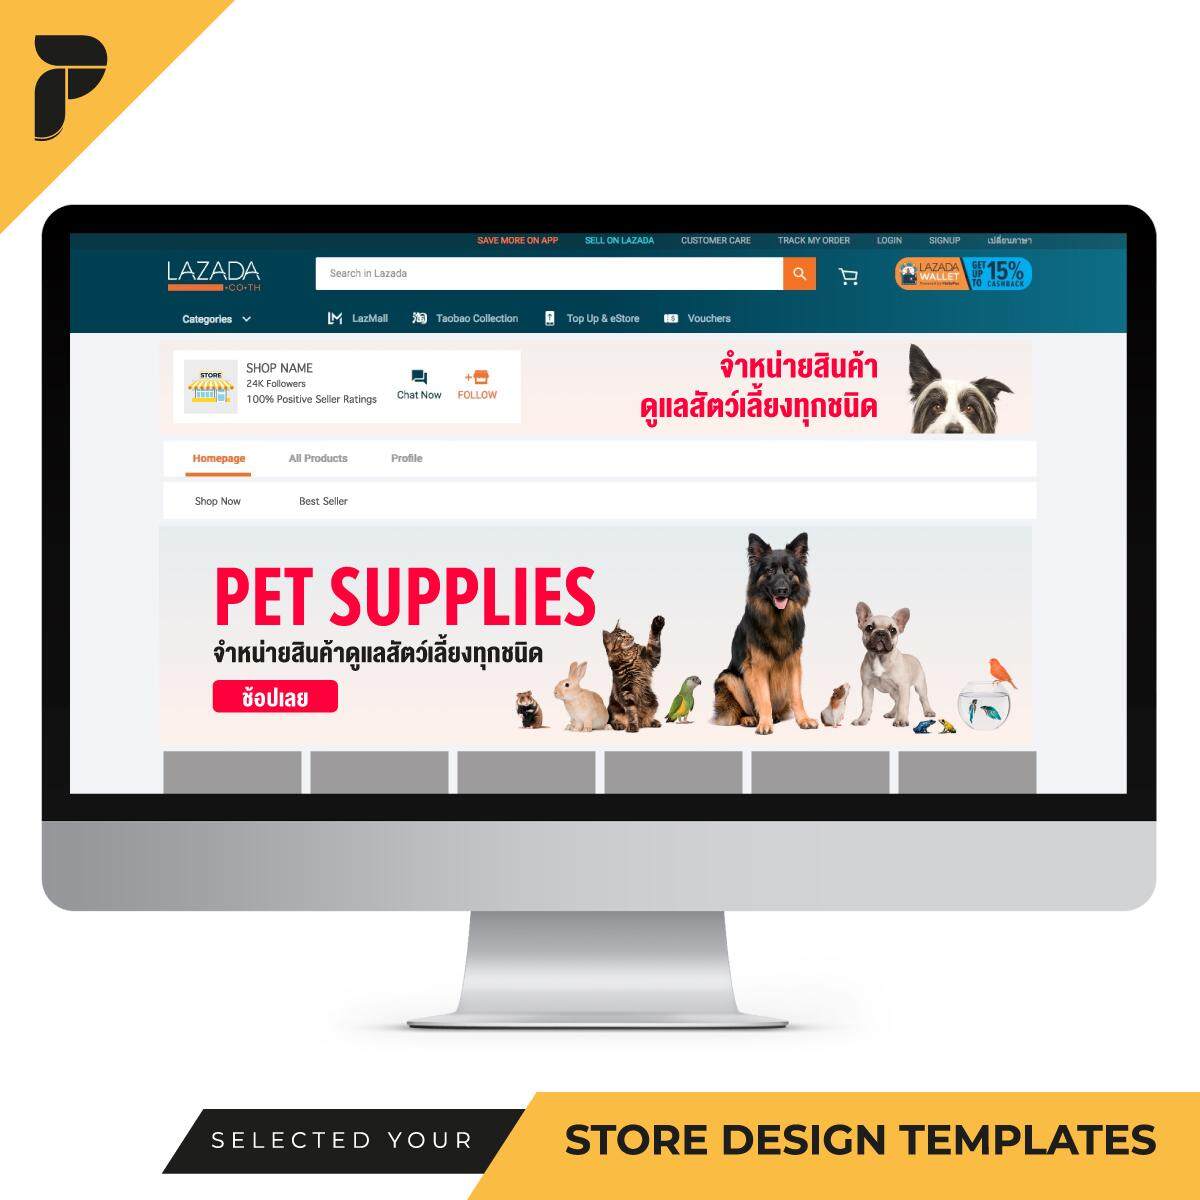 Store Design Template Banner Ready-to-Work by PathGraphic Studio - Pets แบนเนอร์ตกแต่งร้าน แบนเนอร์สำเร็จรูป สำหรับตกแต่งหน้าร้านค้าออนไลน์